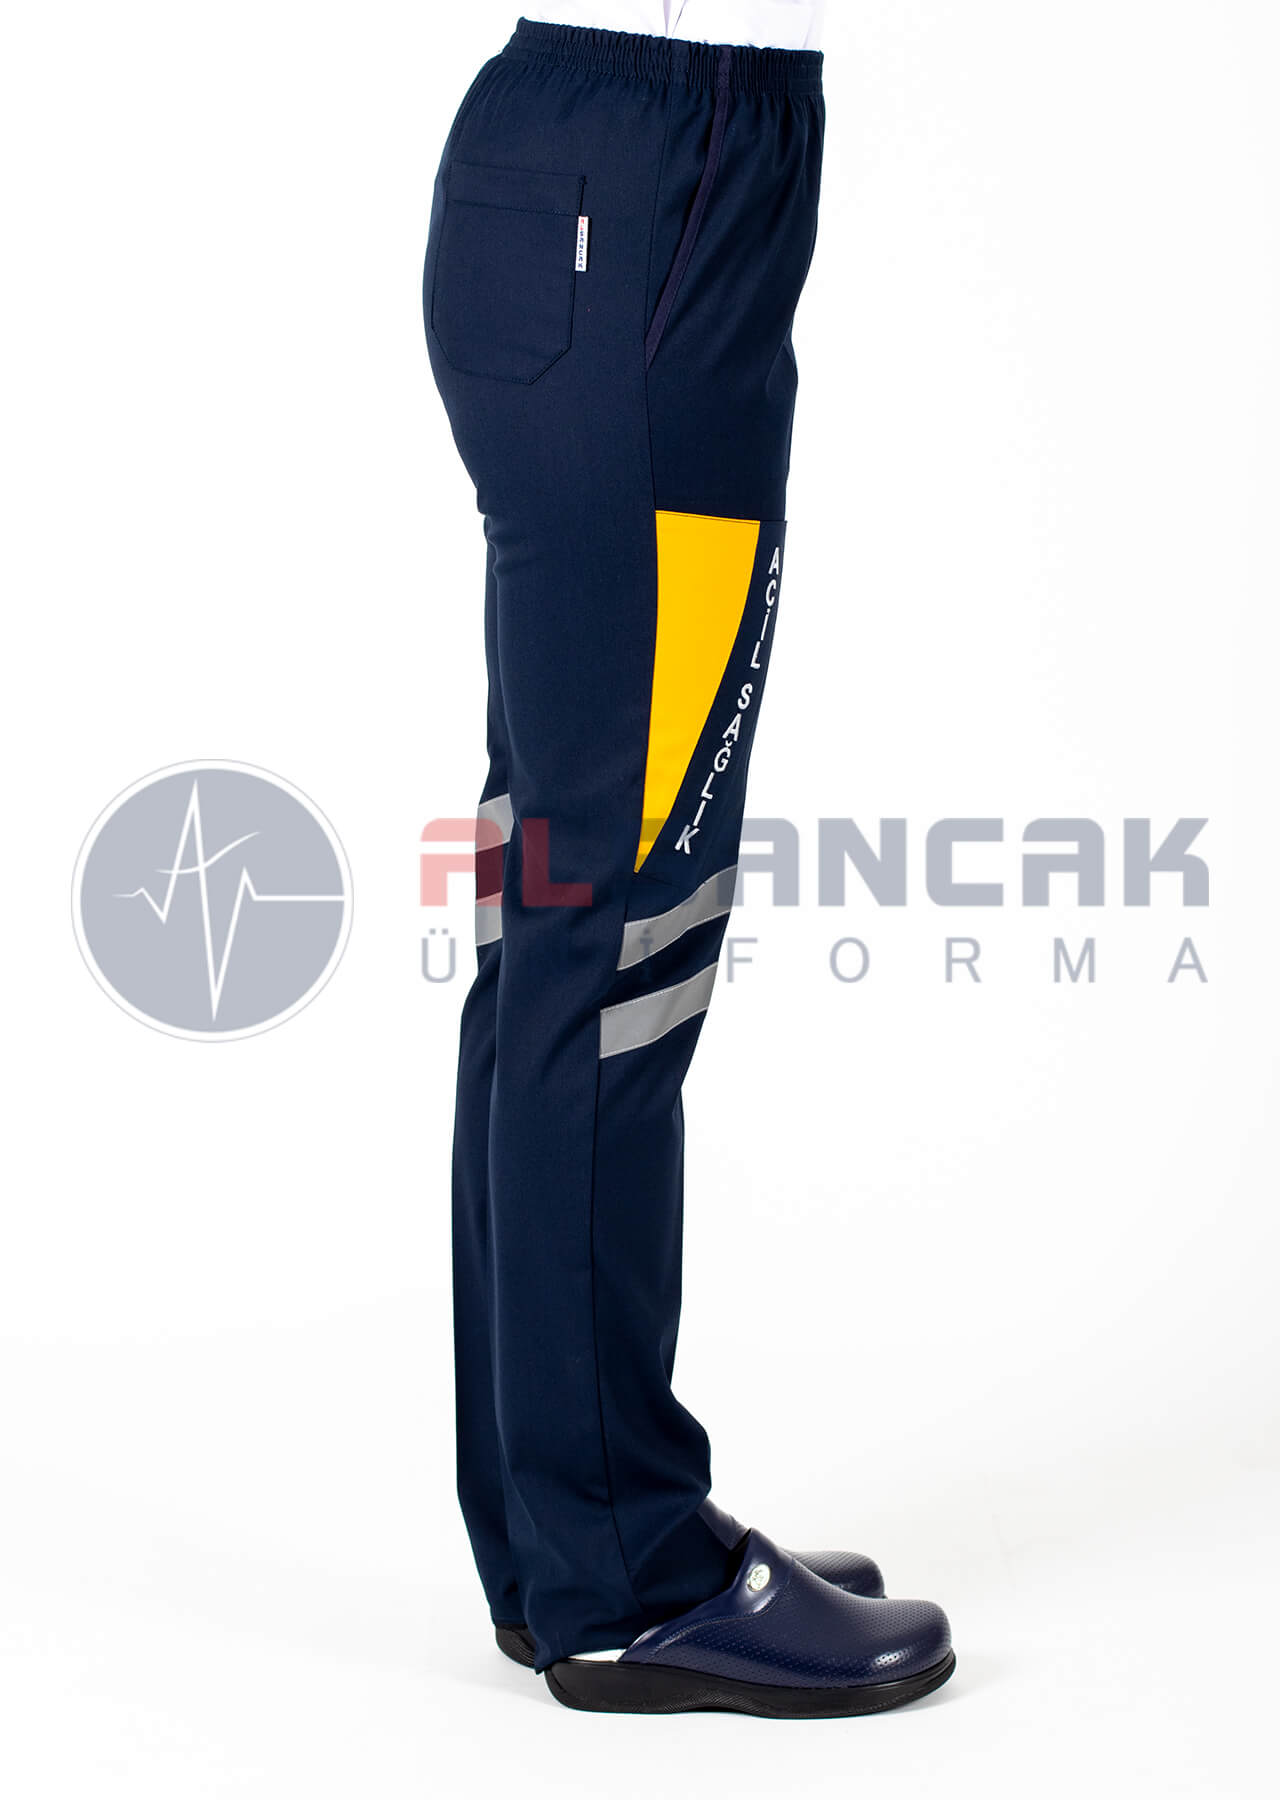 Kadın Yeni Model 112 Acil ATT Lacivert Pantolon (acil sağlık nakışlı)